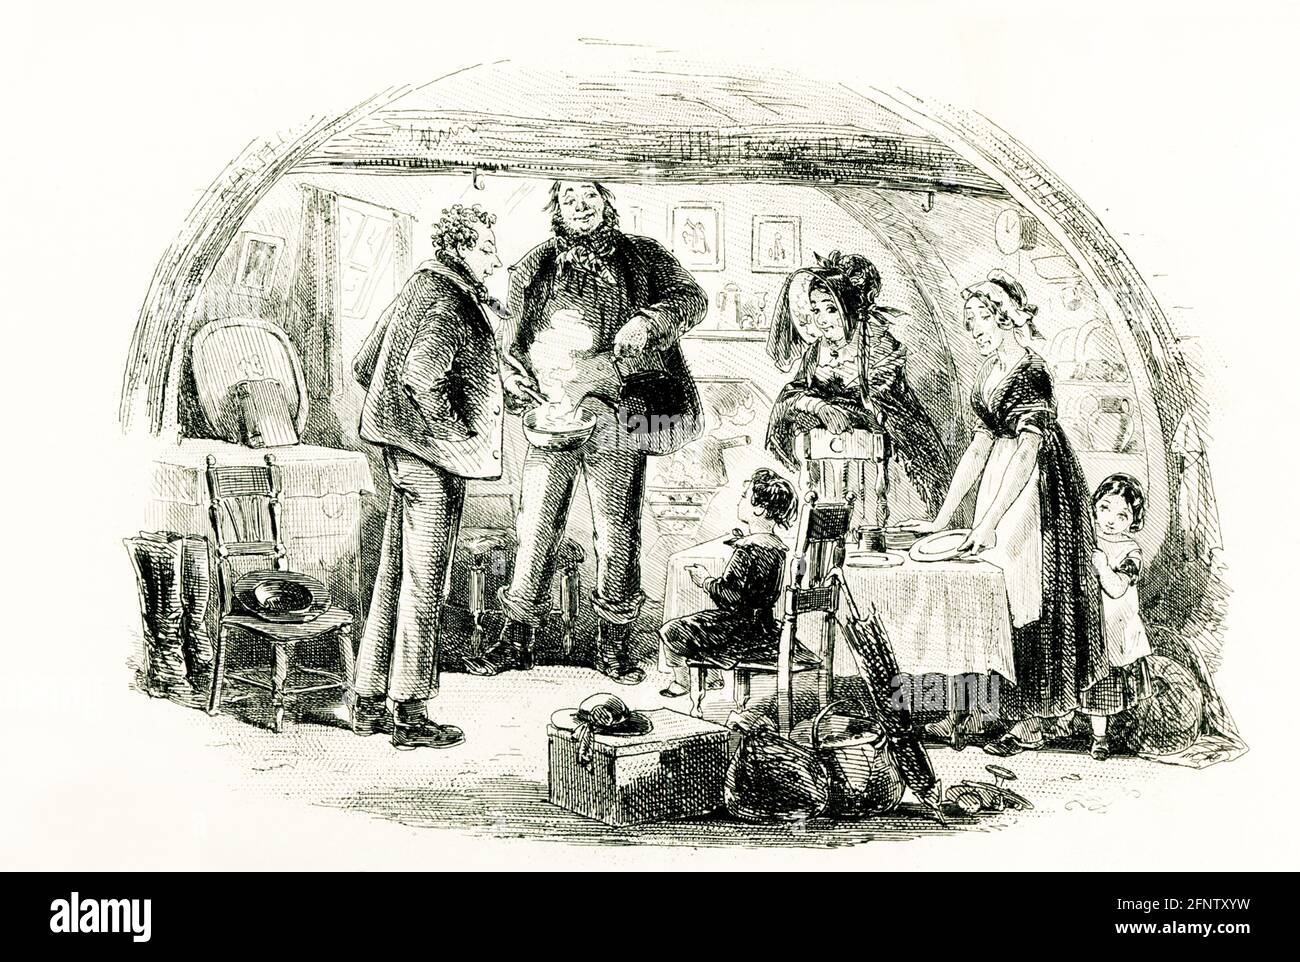 Il romanziere inglese Charles Dickens (1837–1870) pubblicò il suo romanzo David Copperfield descrivendo in dettaglio le sue avventure nel suo viaggio dall'infanzia alla maturità. Fu pubblicato per la prima volta come serie nel 1849–50, e come libro nel 1850. L'illustratore era Hablot Browne. Lo pseudonimo di Browne era 'Phiz'; Dickens' era 'Boz'. Si noti il nome 'Phiz' sotto questa illustrazione di Browne che ha la didascalia 'sono ricoverato in ospedale dal Sig. Peggoty.' Foto Stock